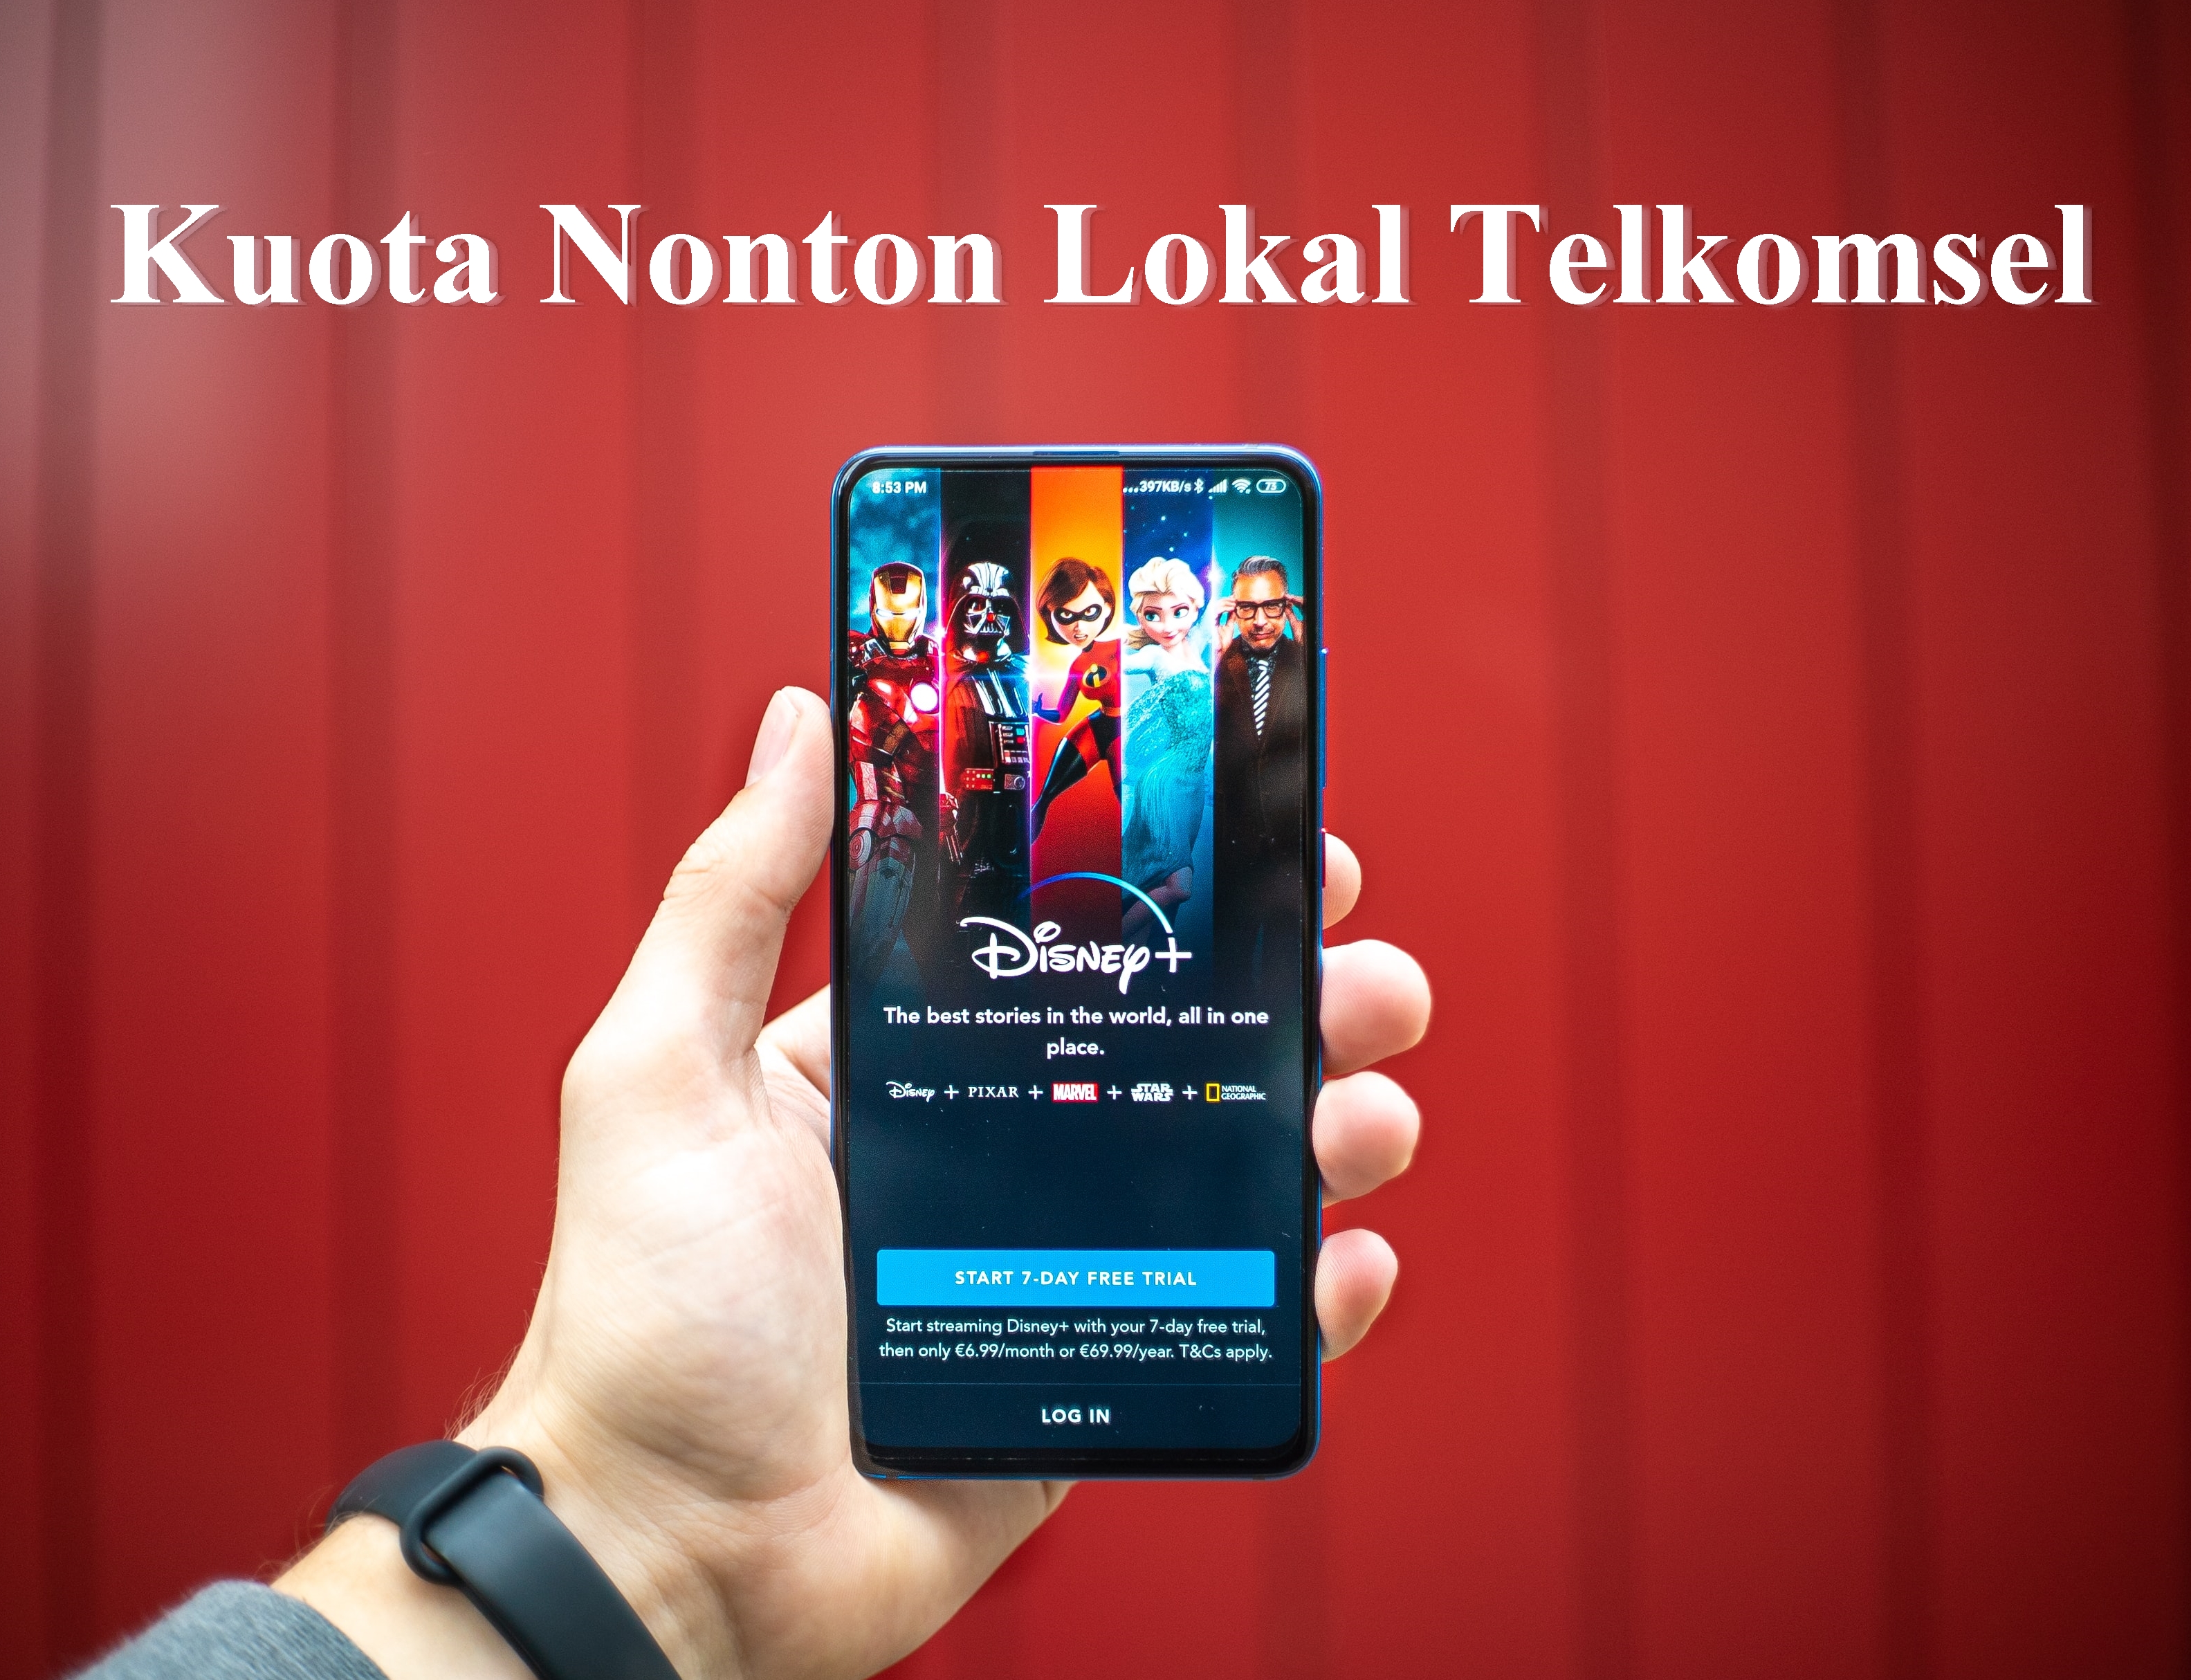 Kuota Nonton Lokal Telkomsel